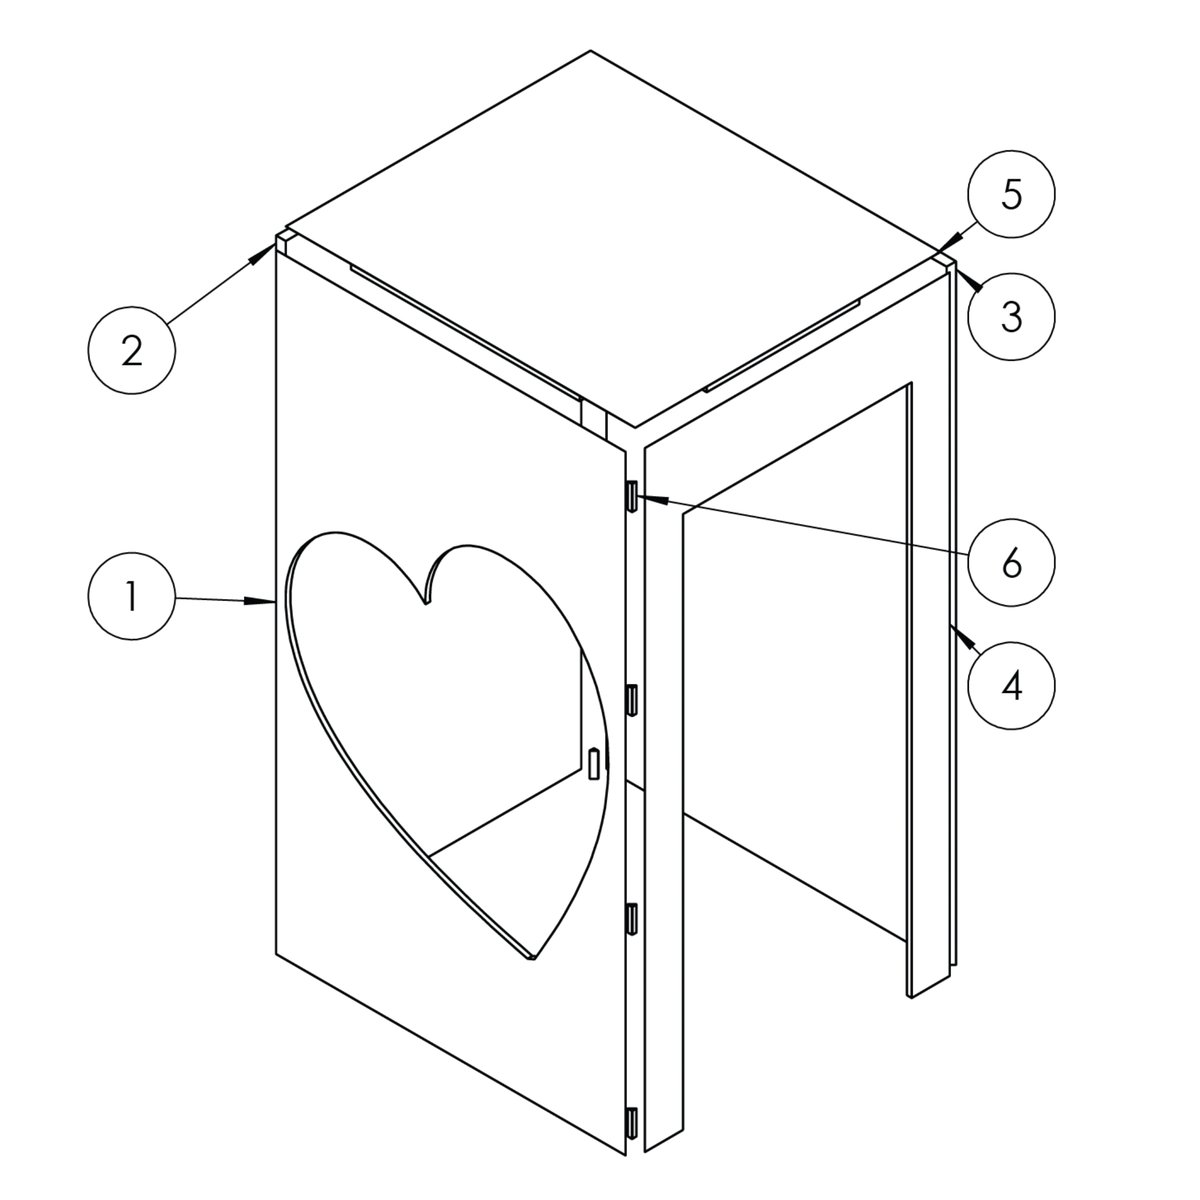 Barilla Stepping into Love Box - Tech Drawing